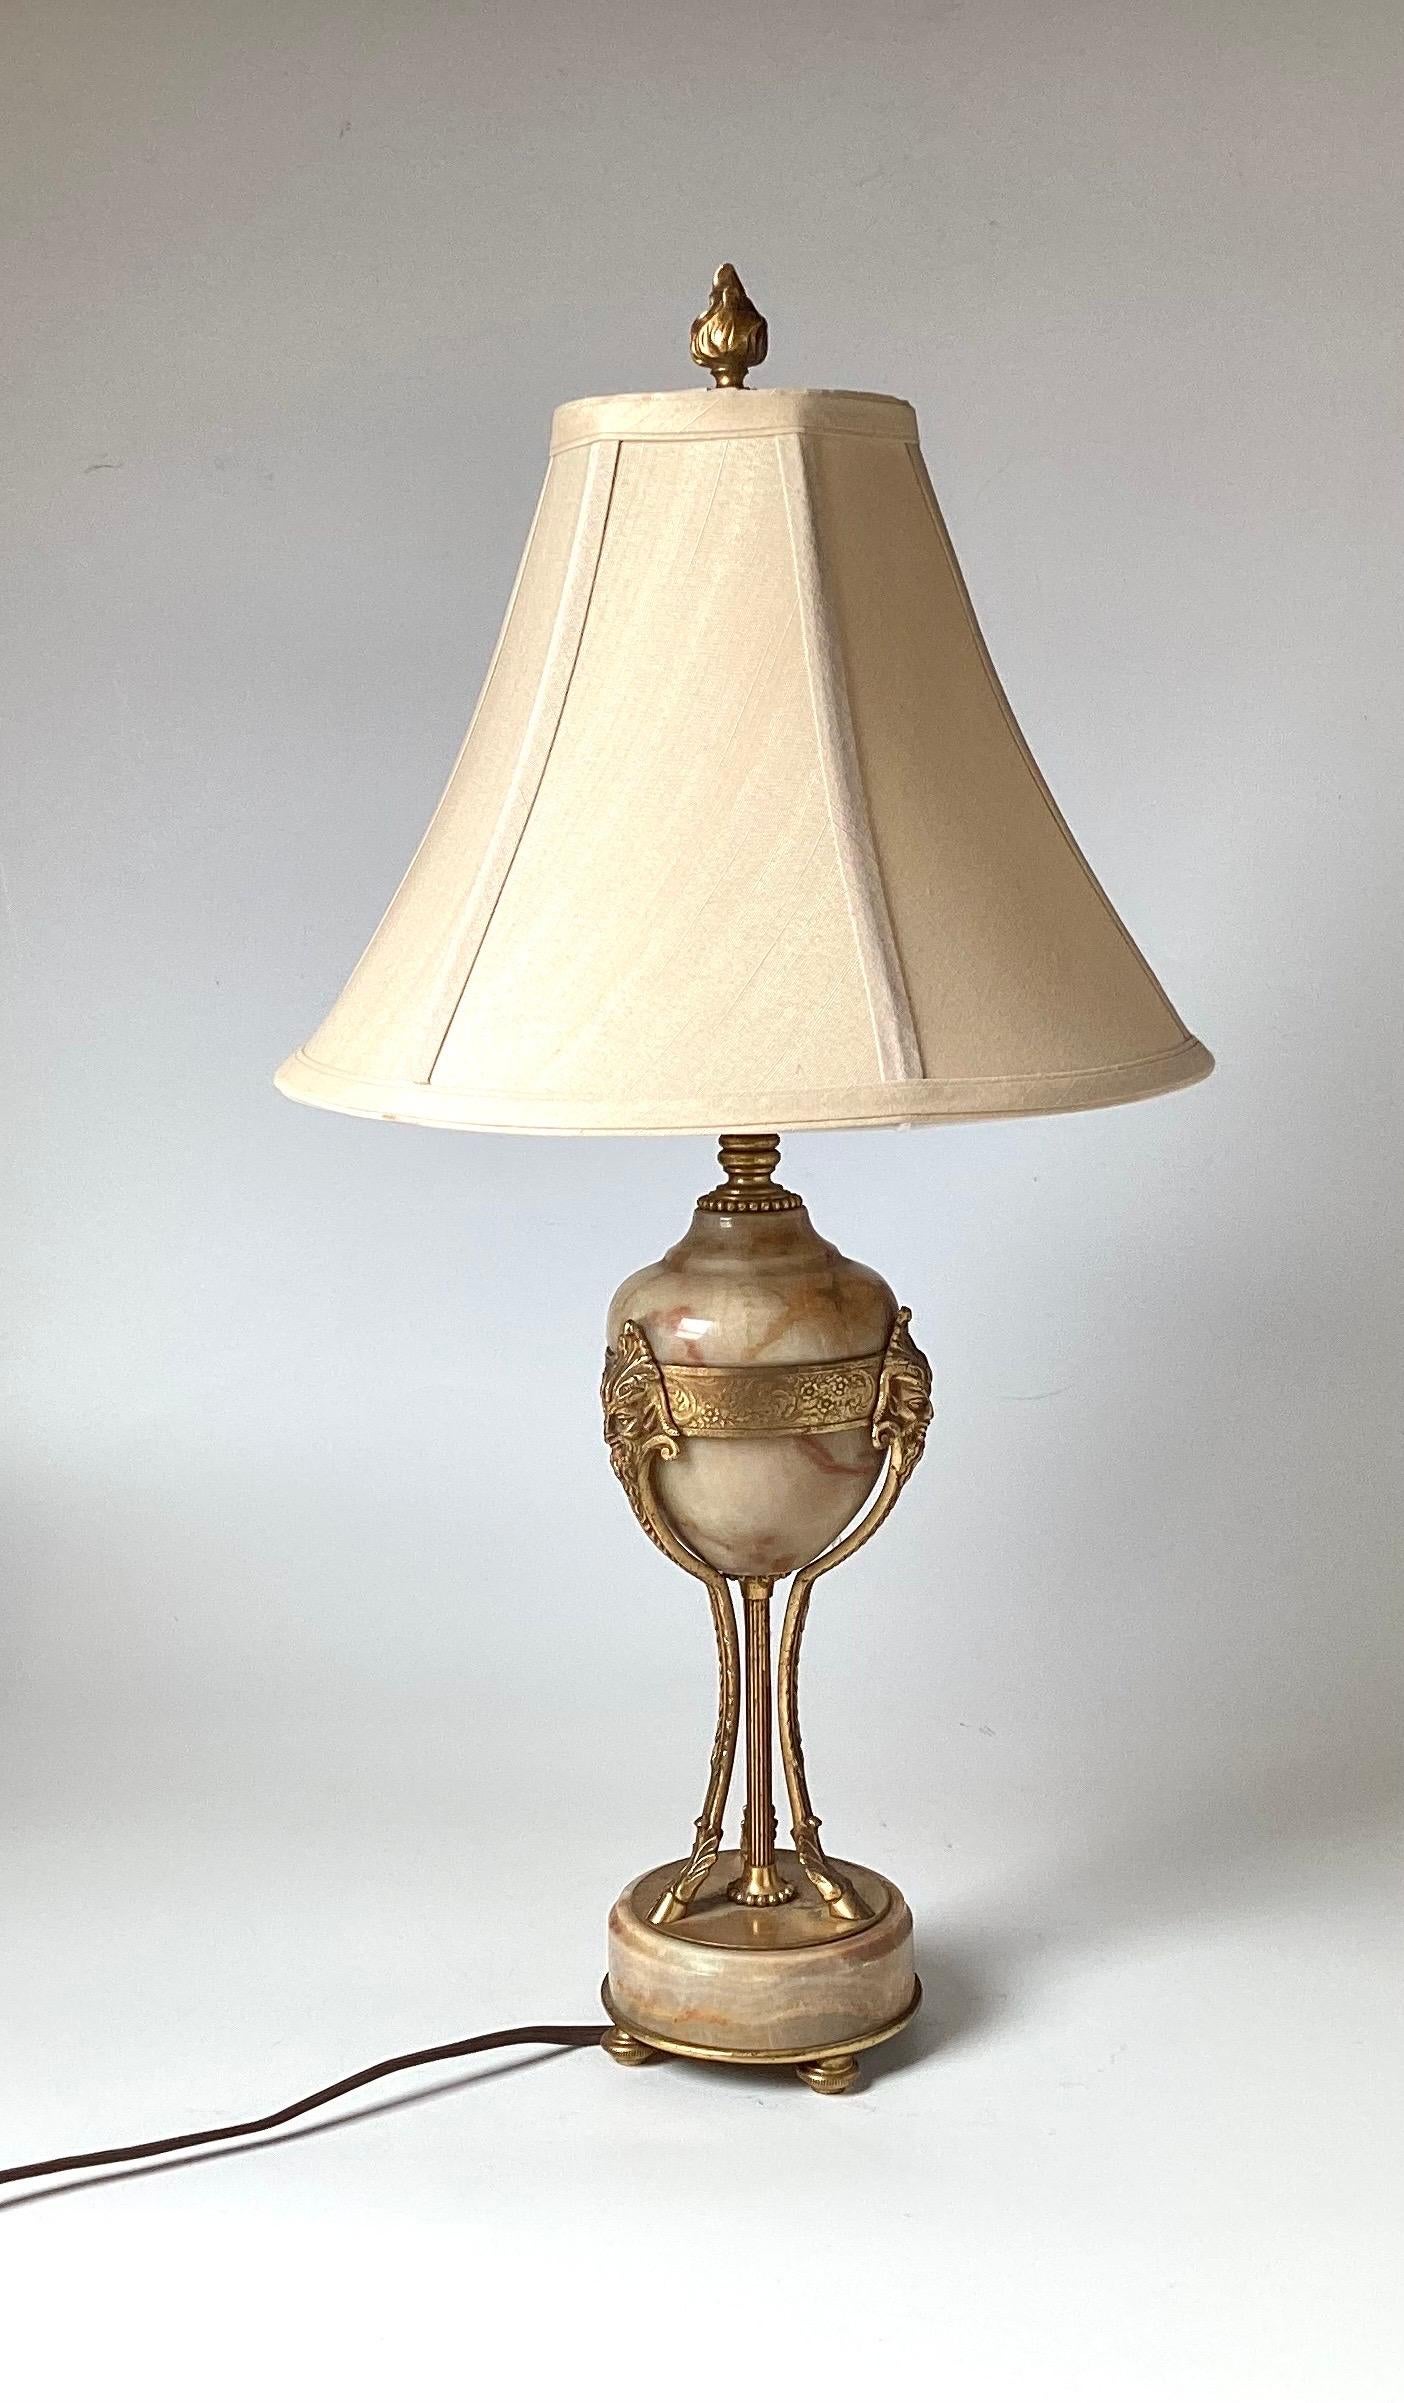 Ein elegantes Paar kleiner Tischlampen im Louis VXI-Stil aus Bronze und Marmor mit ovalem Marmorkörper und drei vergoldeten Bronzebeinen, die an einem runden Sockel befestigt sind.  Die Lampen sind 21 Zoll hoch, 4,5 Zoll im Durchmesser.  Die